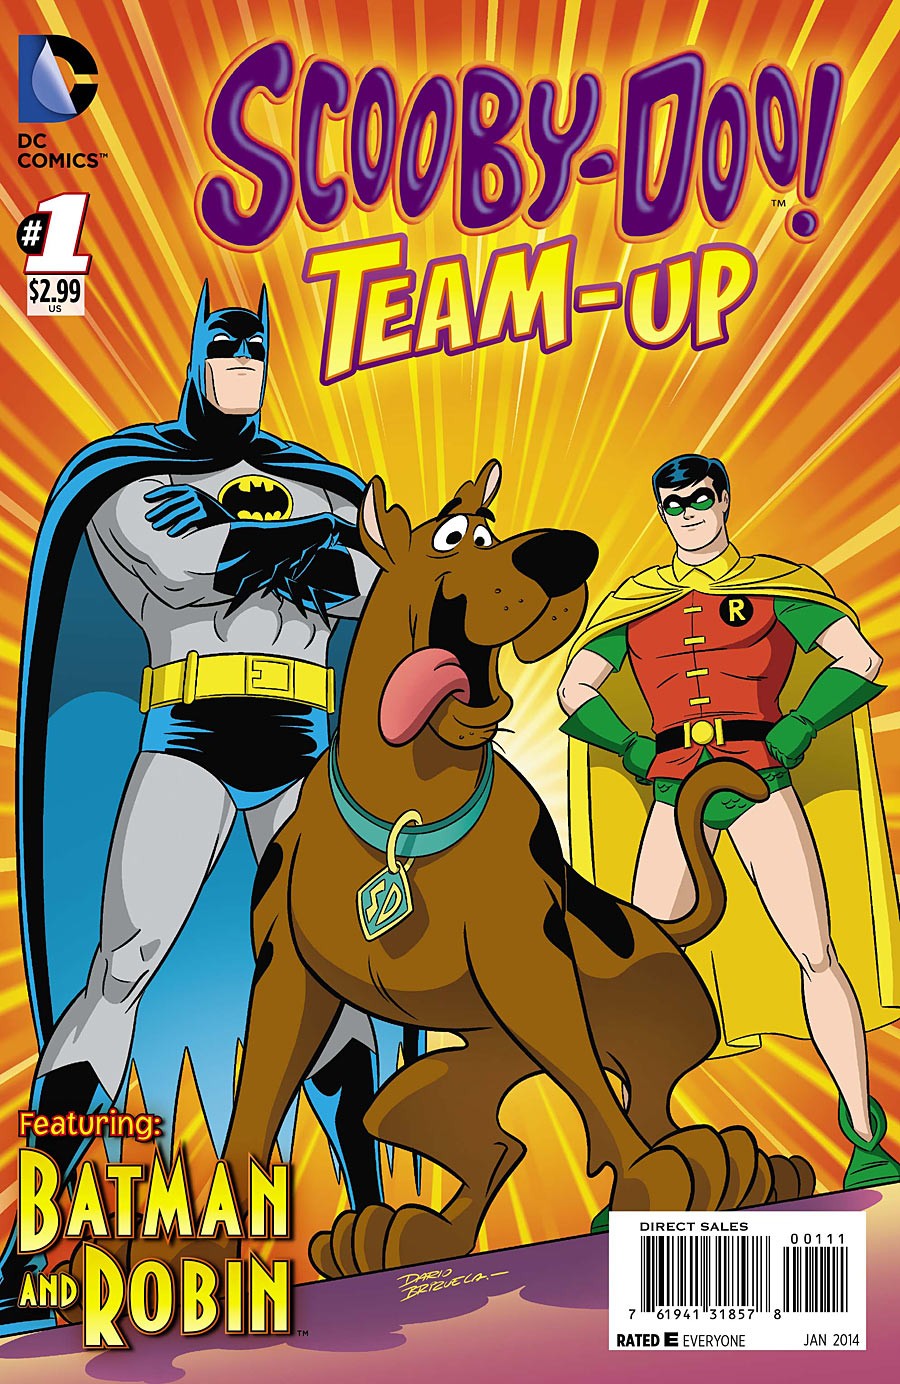 Scooby-Doo Team-Up Vol. 1 #1